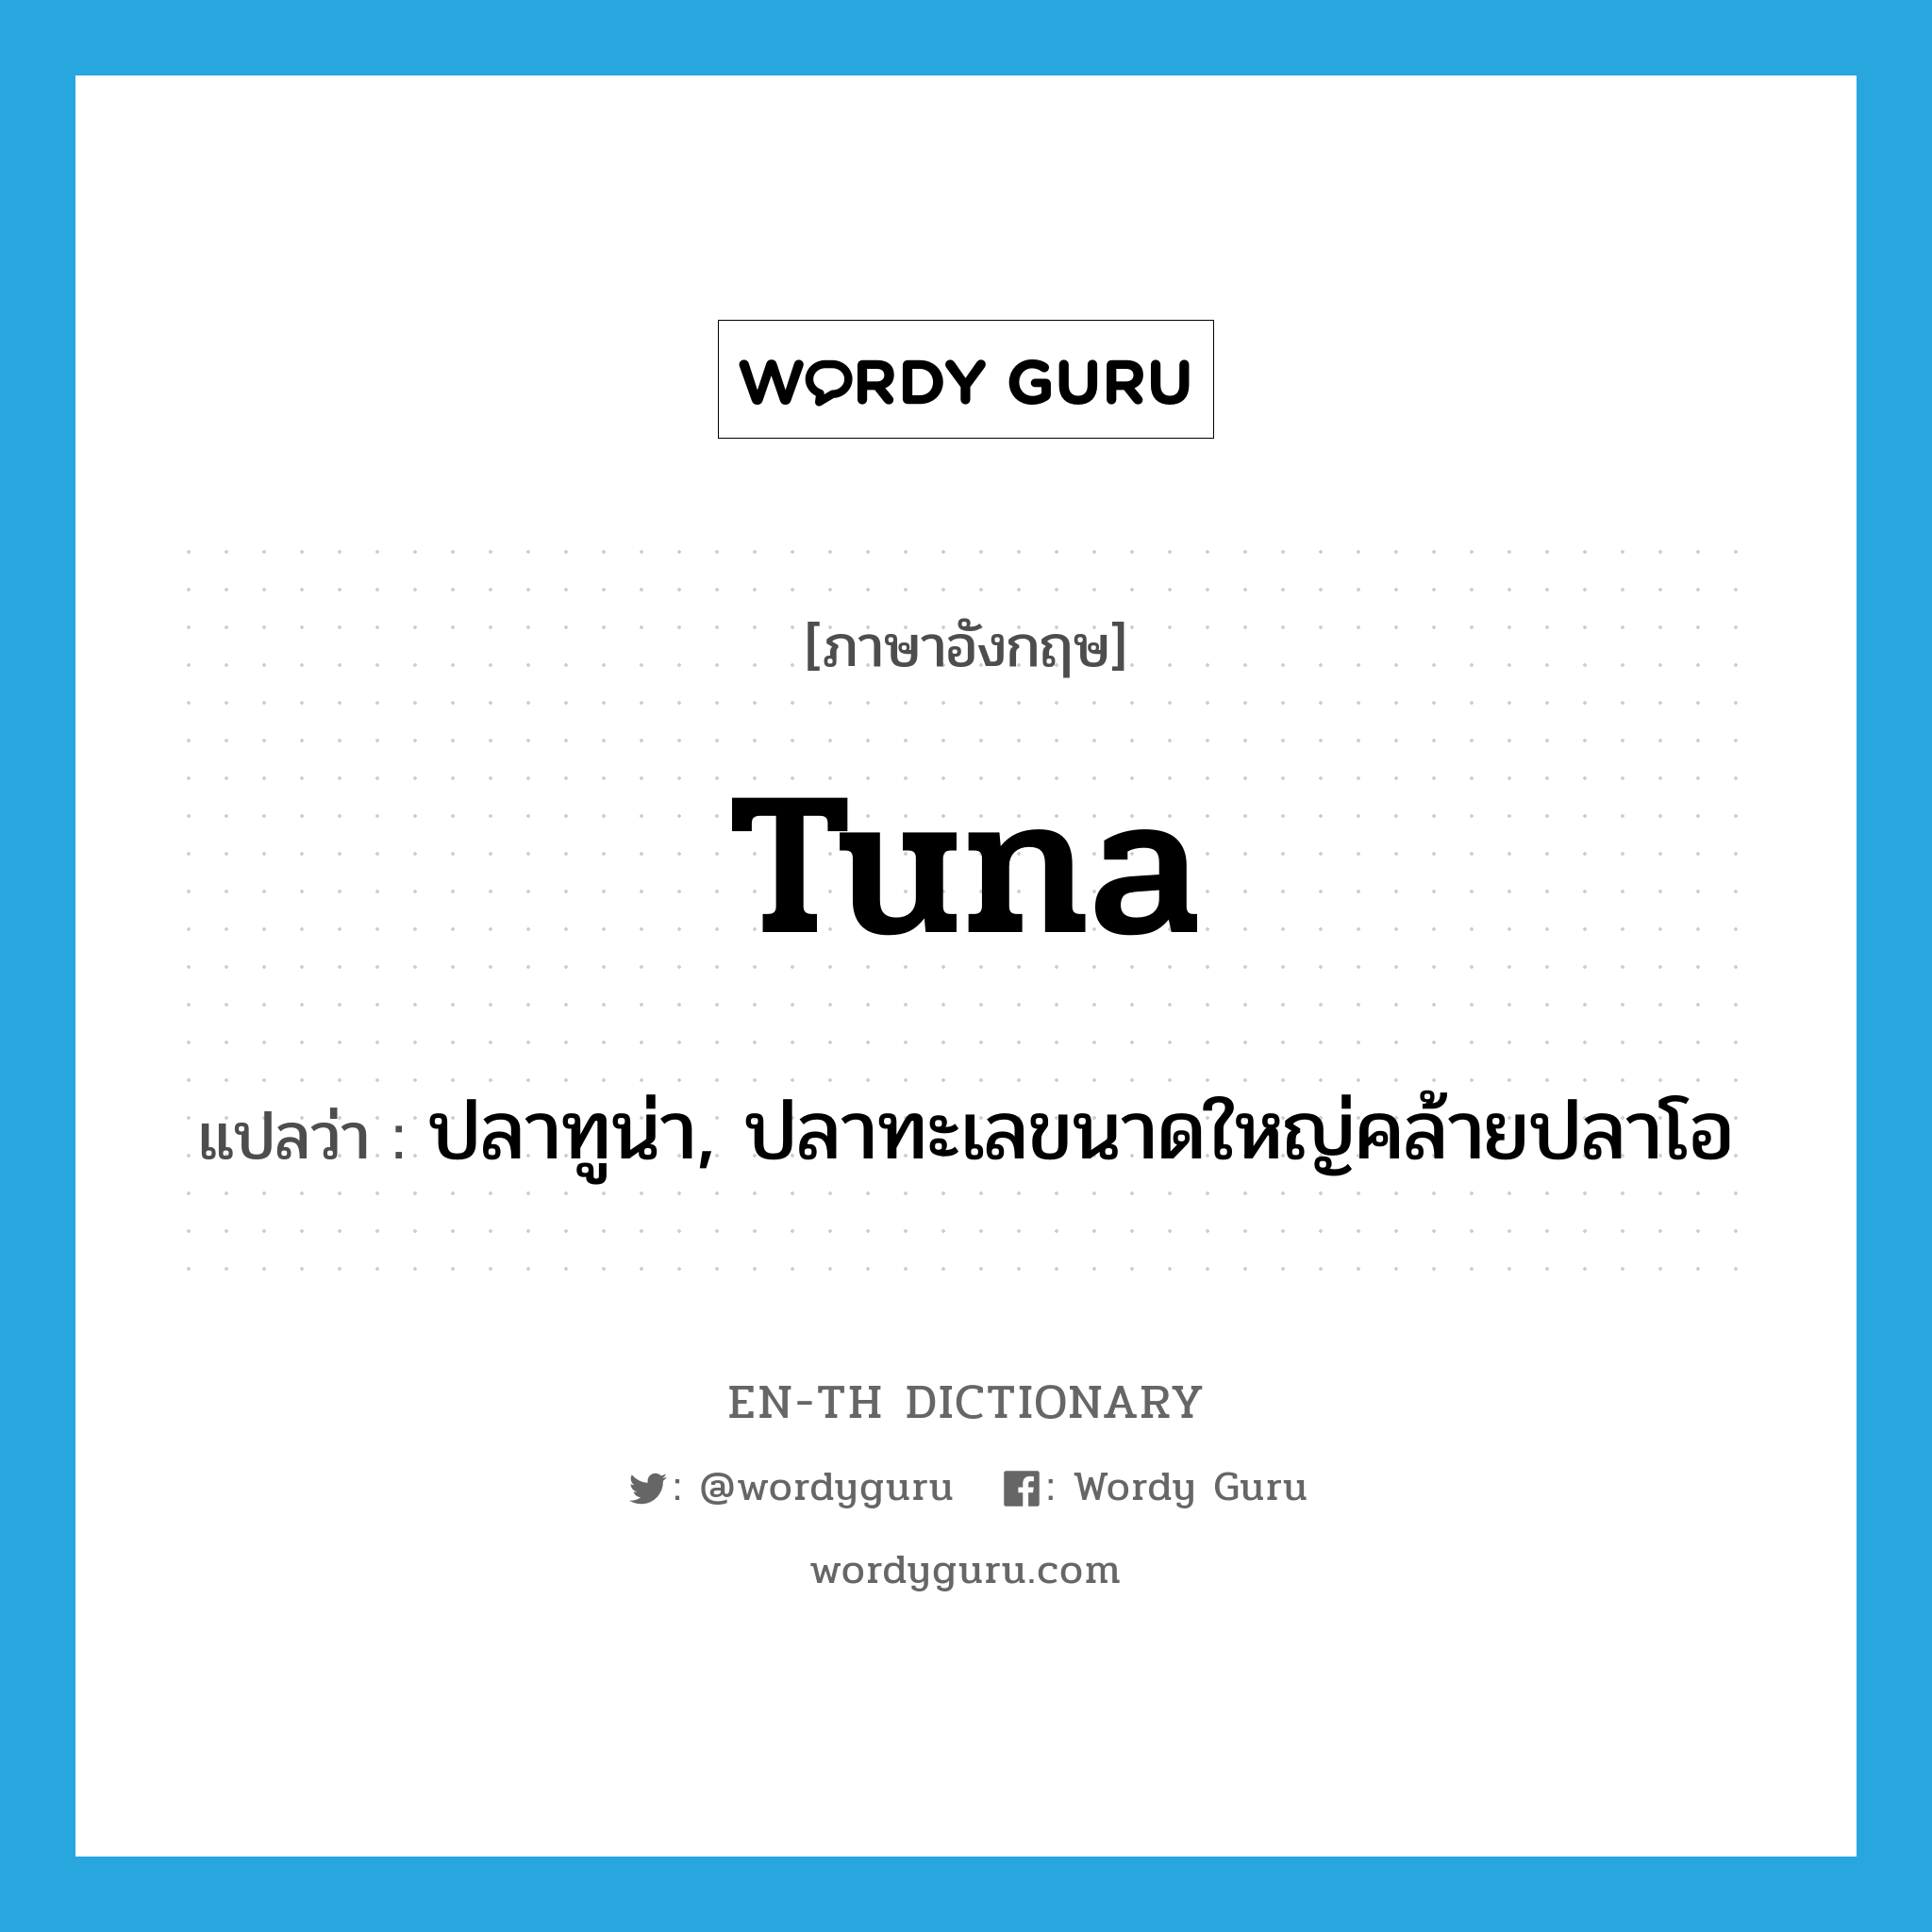 tuna แปลว่า?, คำศัพท์ภาษาอังกฤษ tuna แปลว่า ปลาทูน่า, ปลาทะเลขนาดใหญ่คล้ายปลาโอ ประเภท N หมวด N